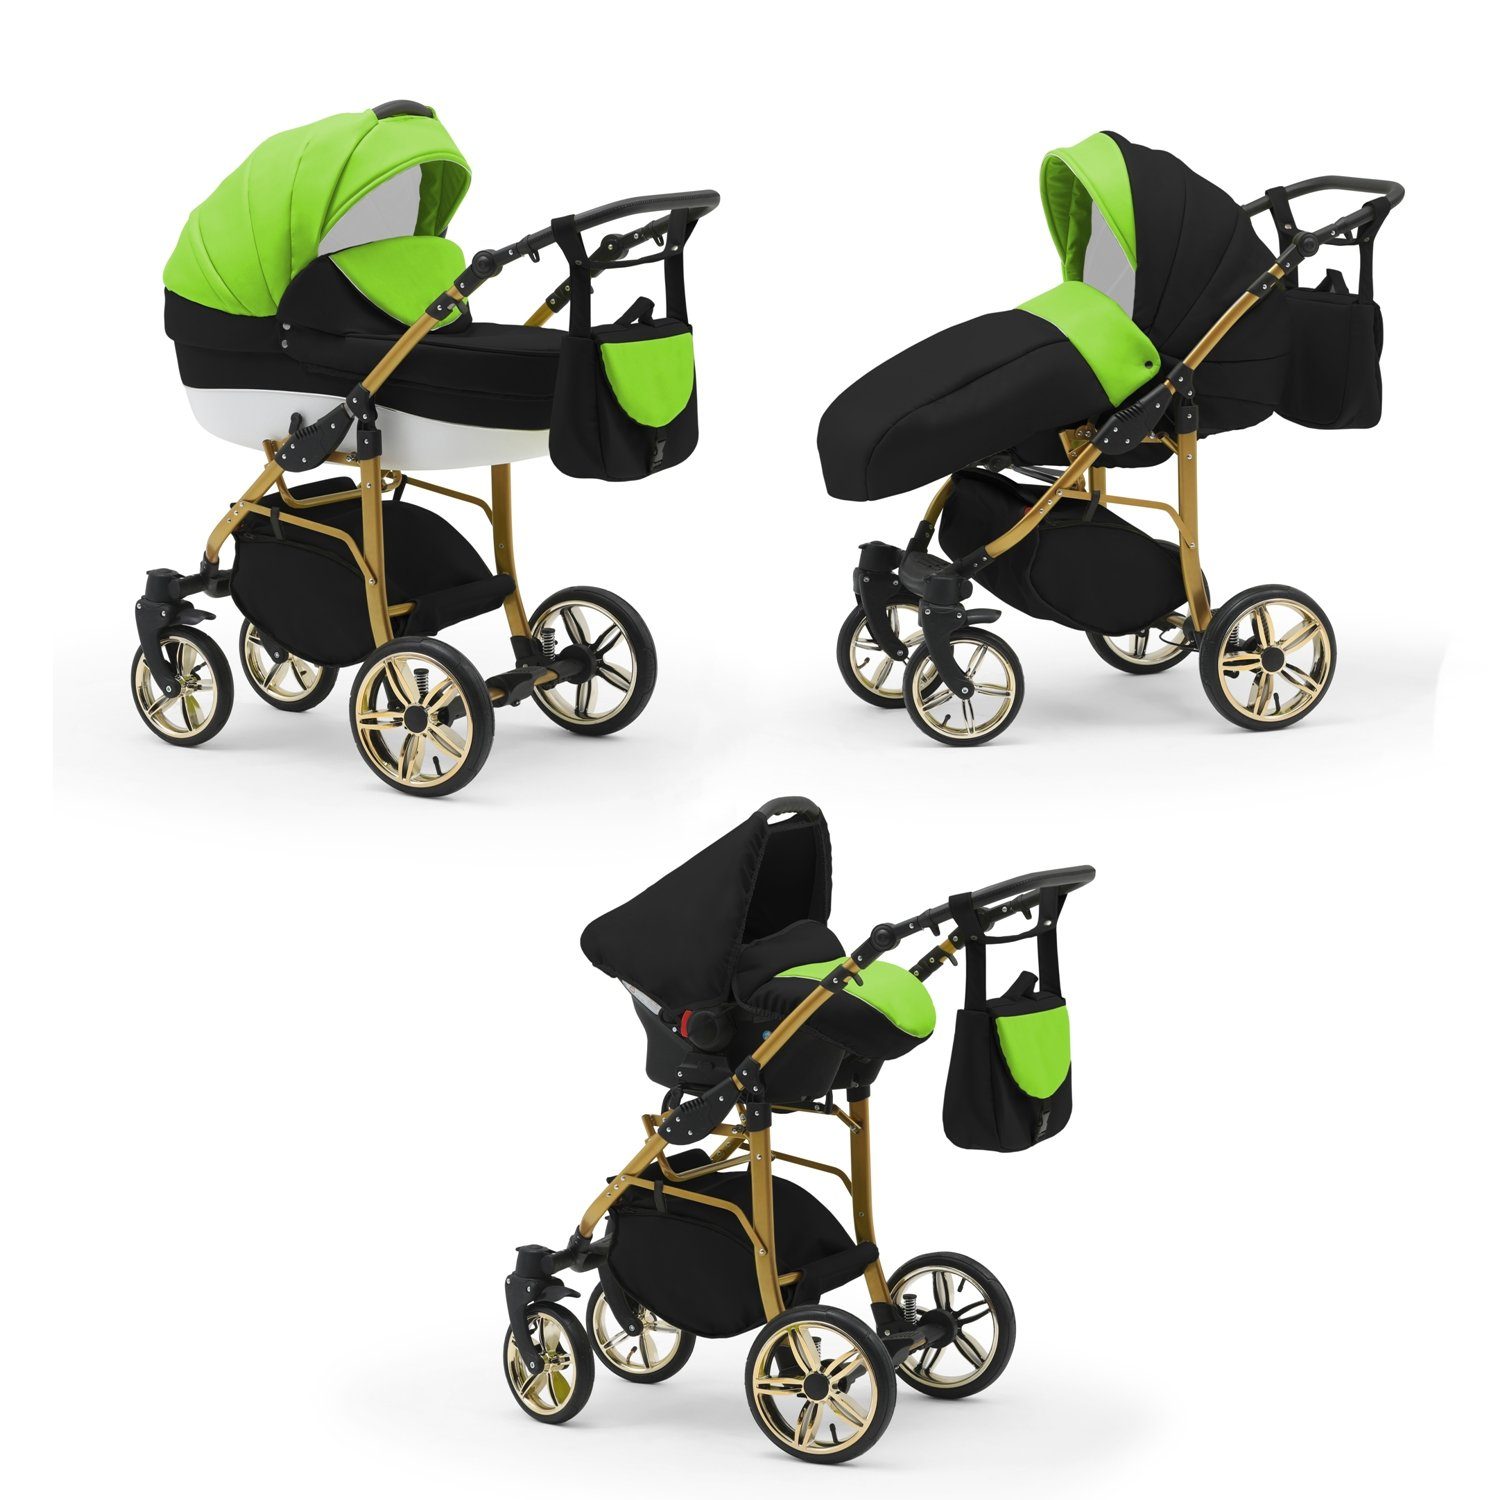 babies-on-wheels Kombi-Kinderwagen Teile 1 in Grün-Schwarz-Weiß Gold- 46 in Kinderwagen-Set - 3 Farben 16 Cosmo